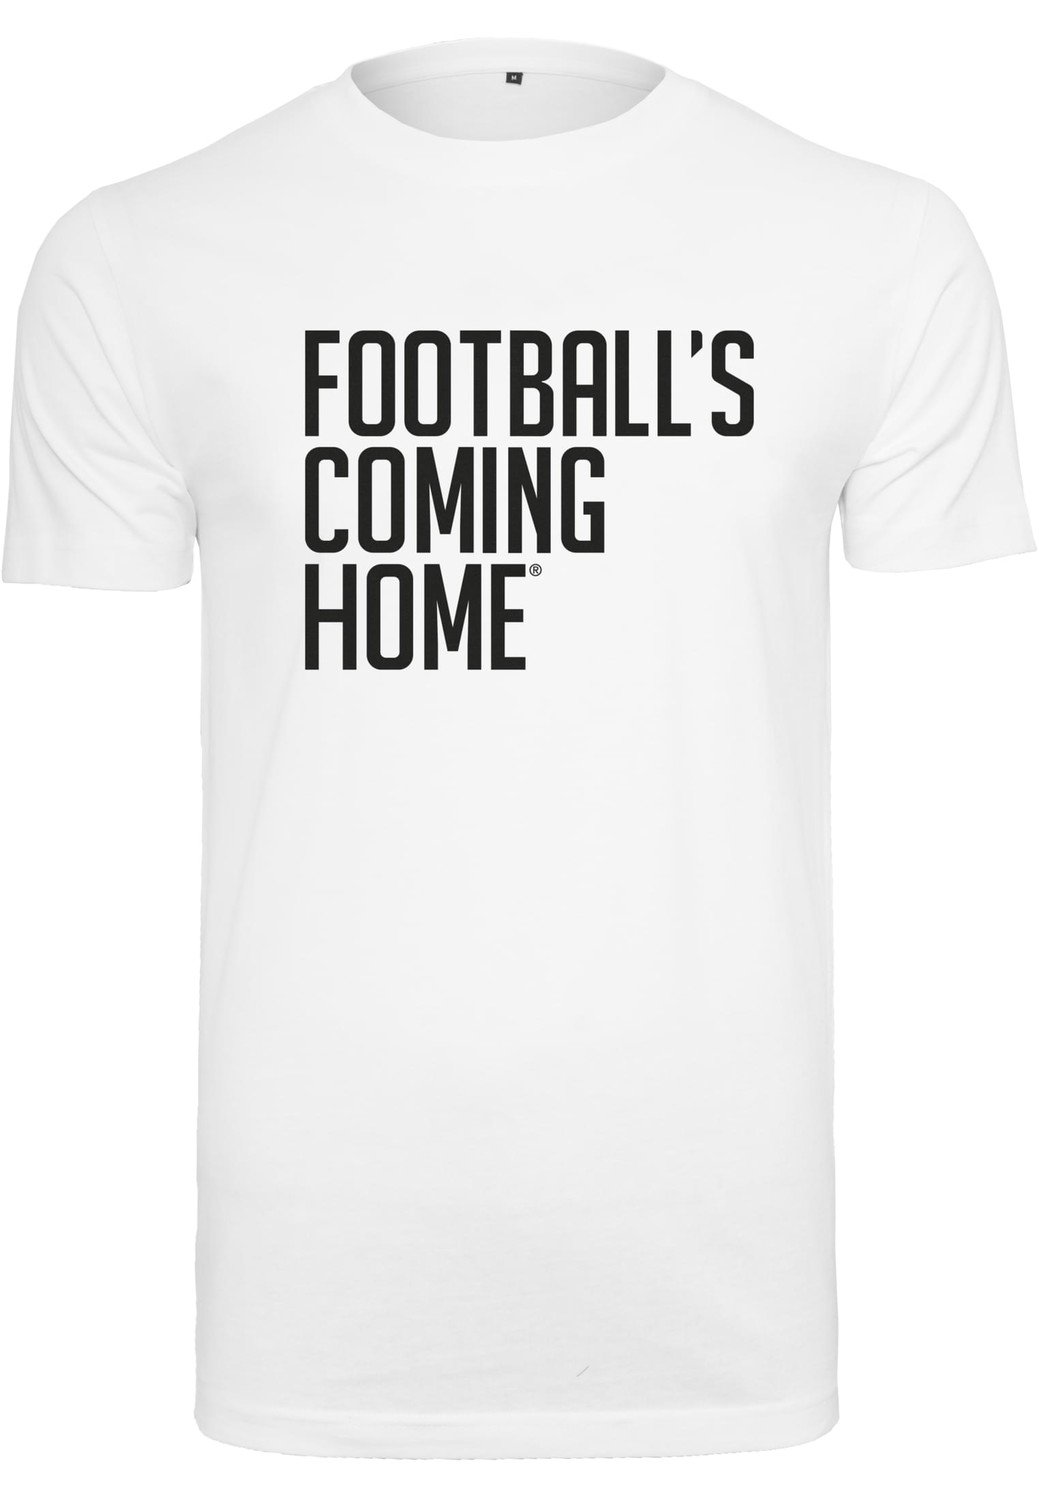 Footballs Coming Home Logo Tee white